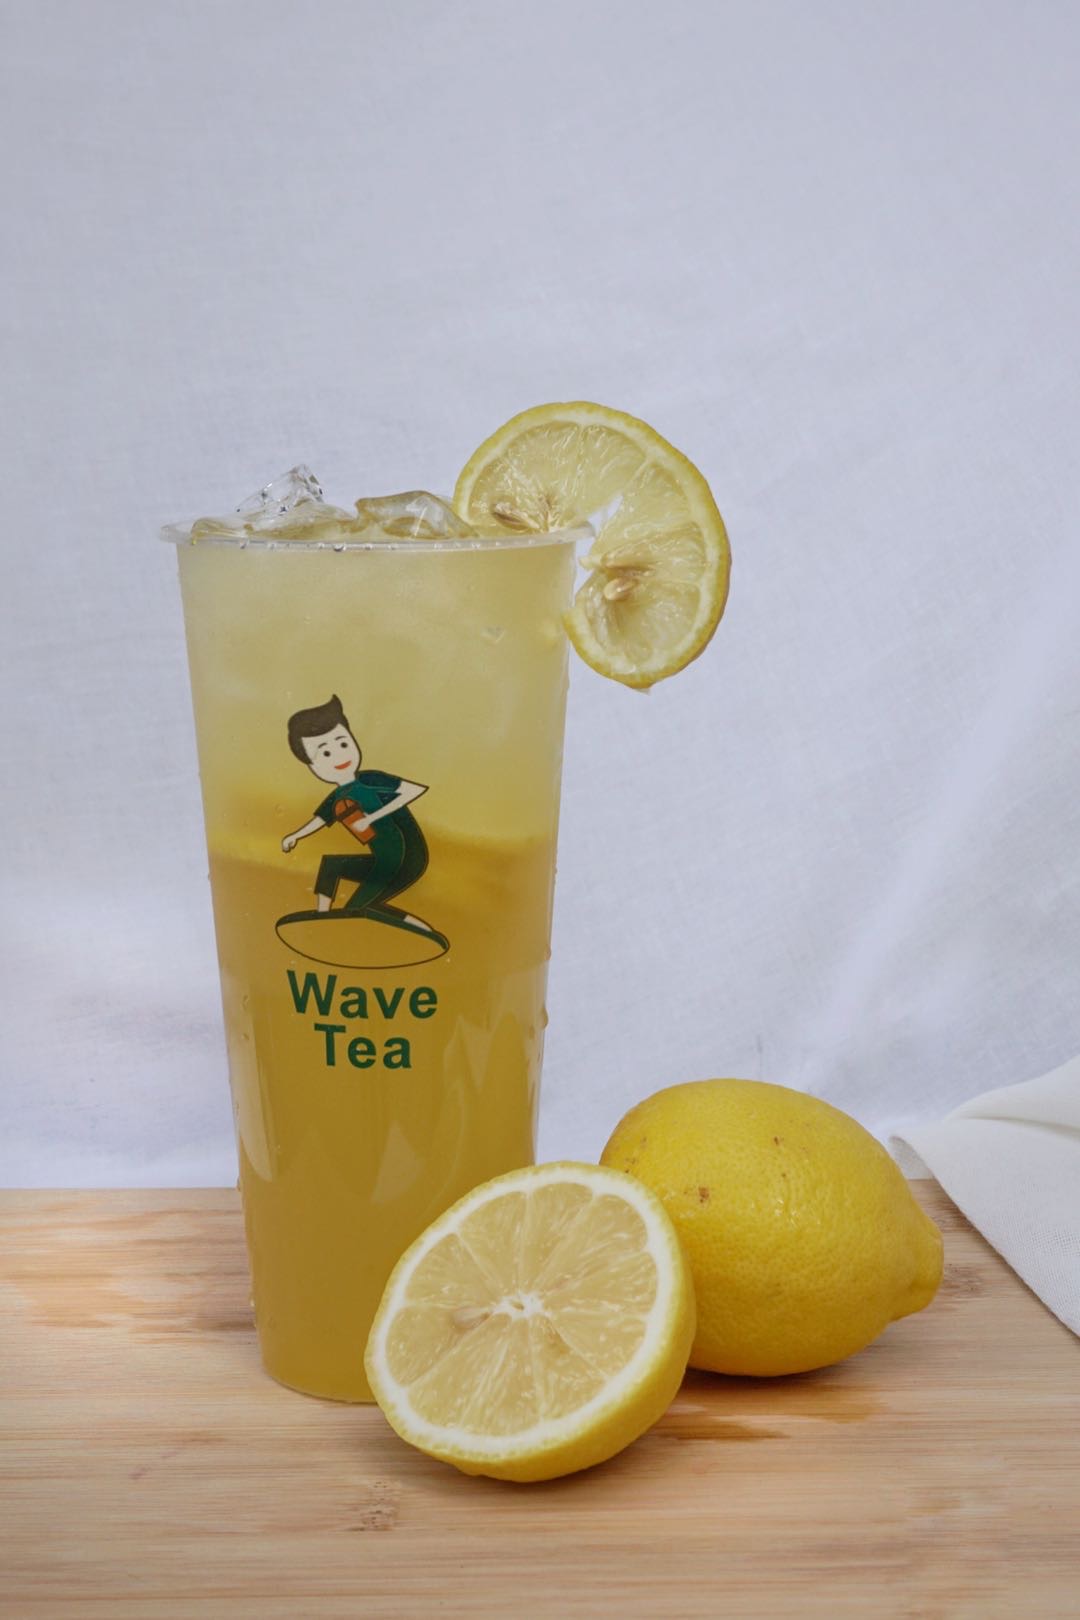 Wave Tea LLC